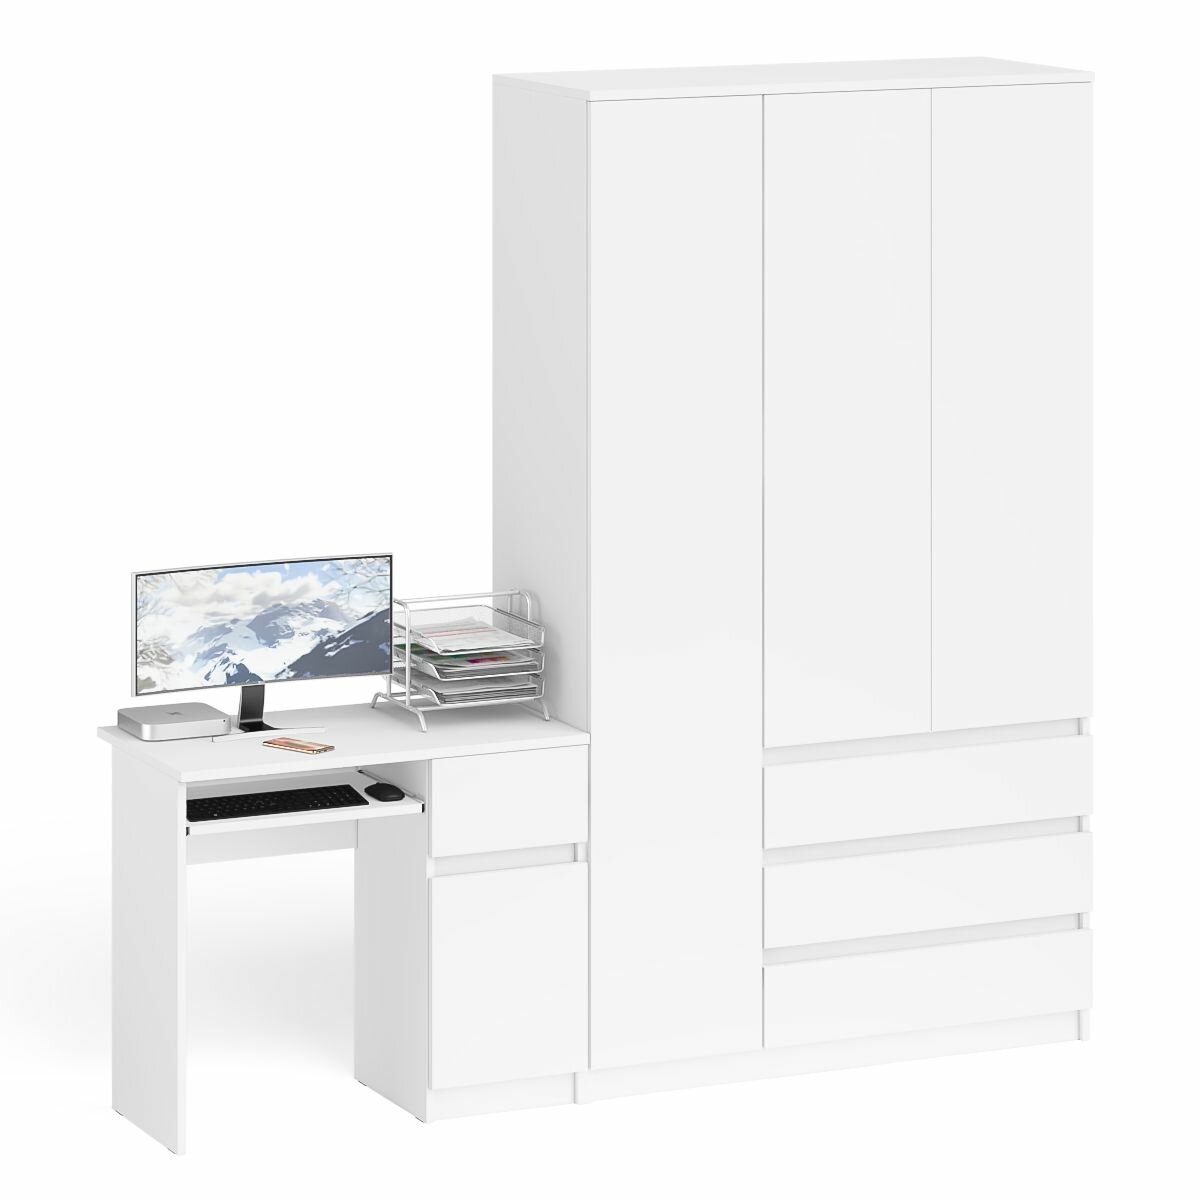 Компьютерный стол СВК Морис тумбой с дверкой и ящиком правый и шкаф-комод цвет белый, 210,4х50,4х209,6 см.